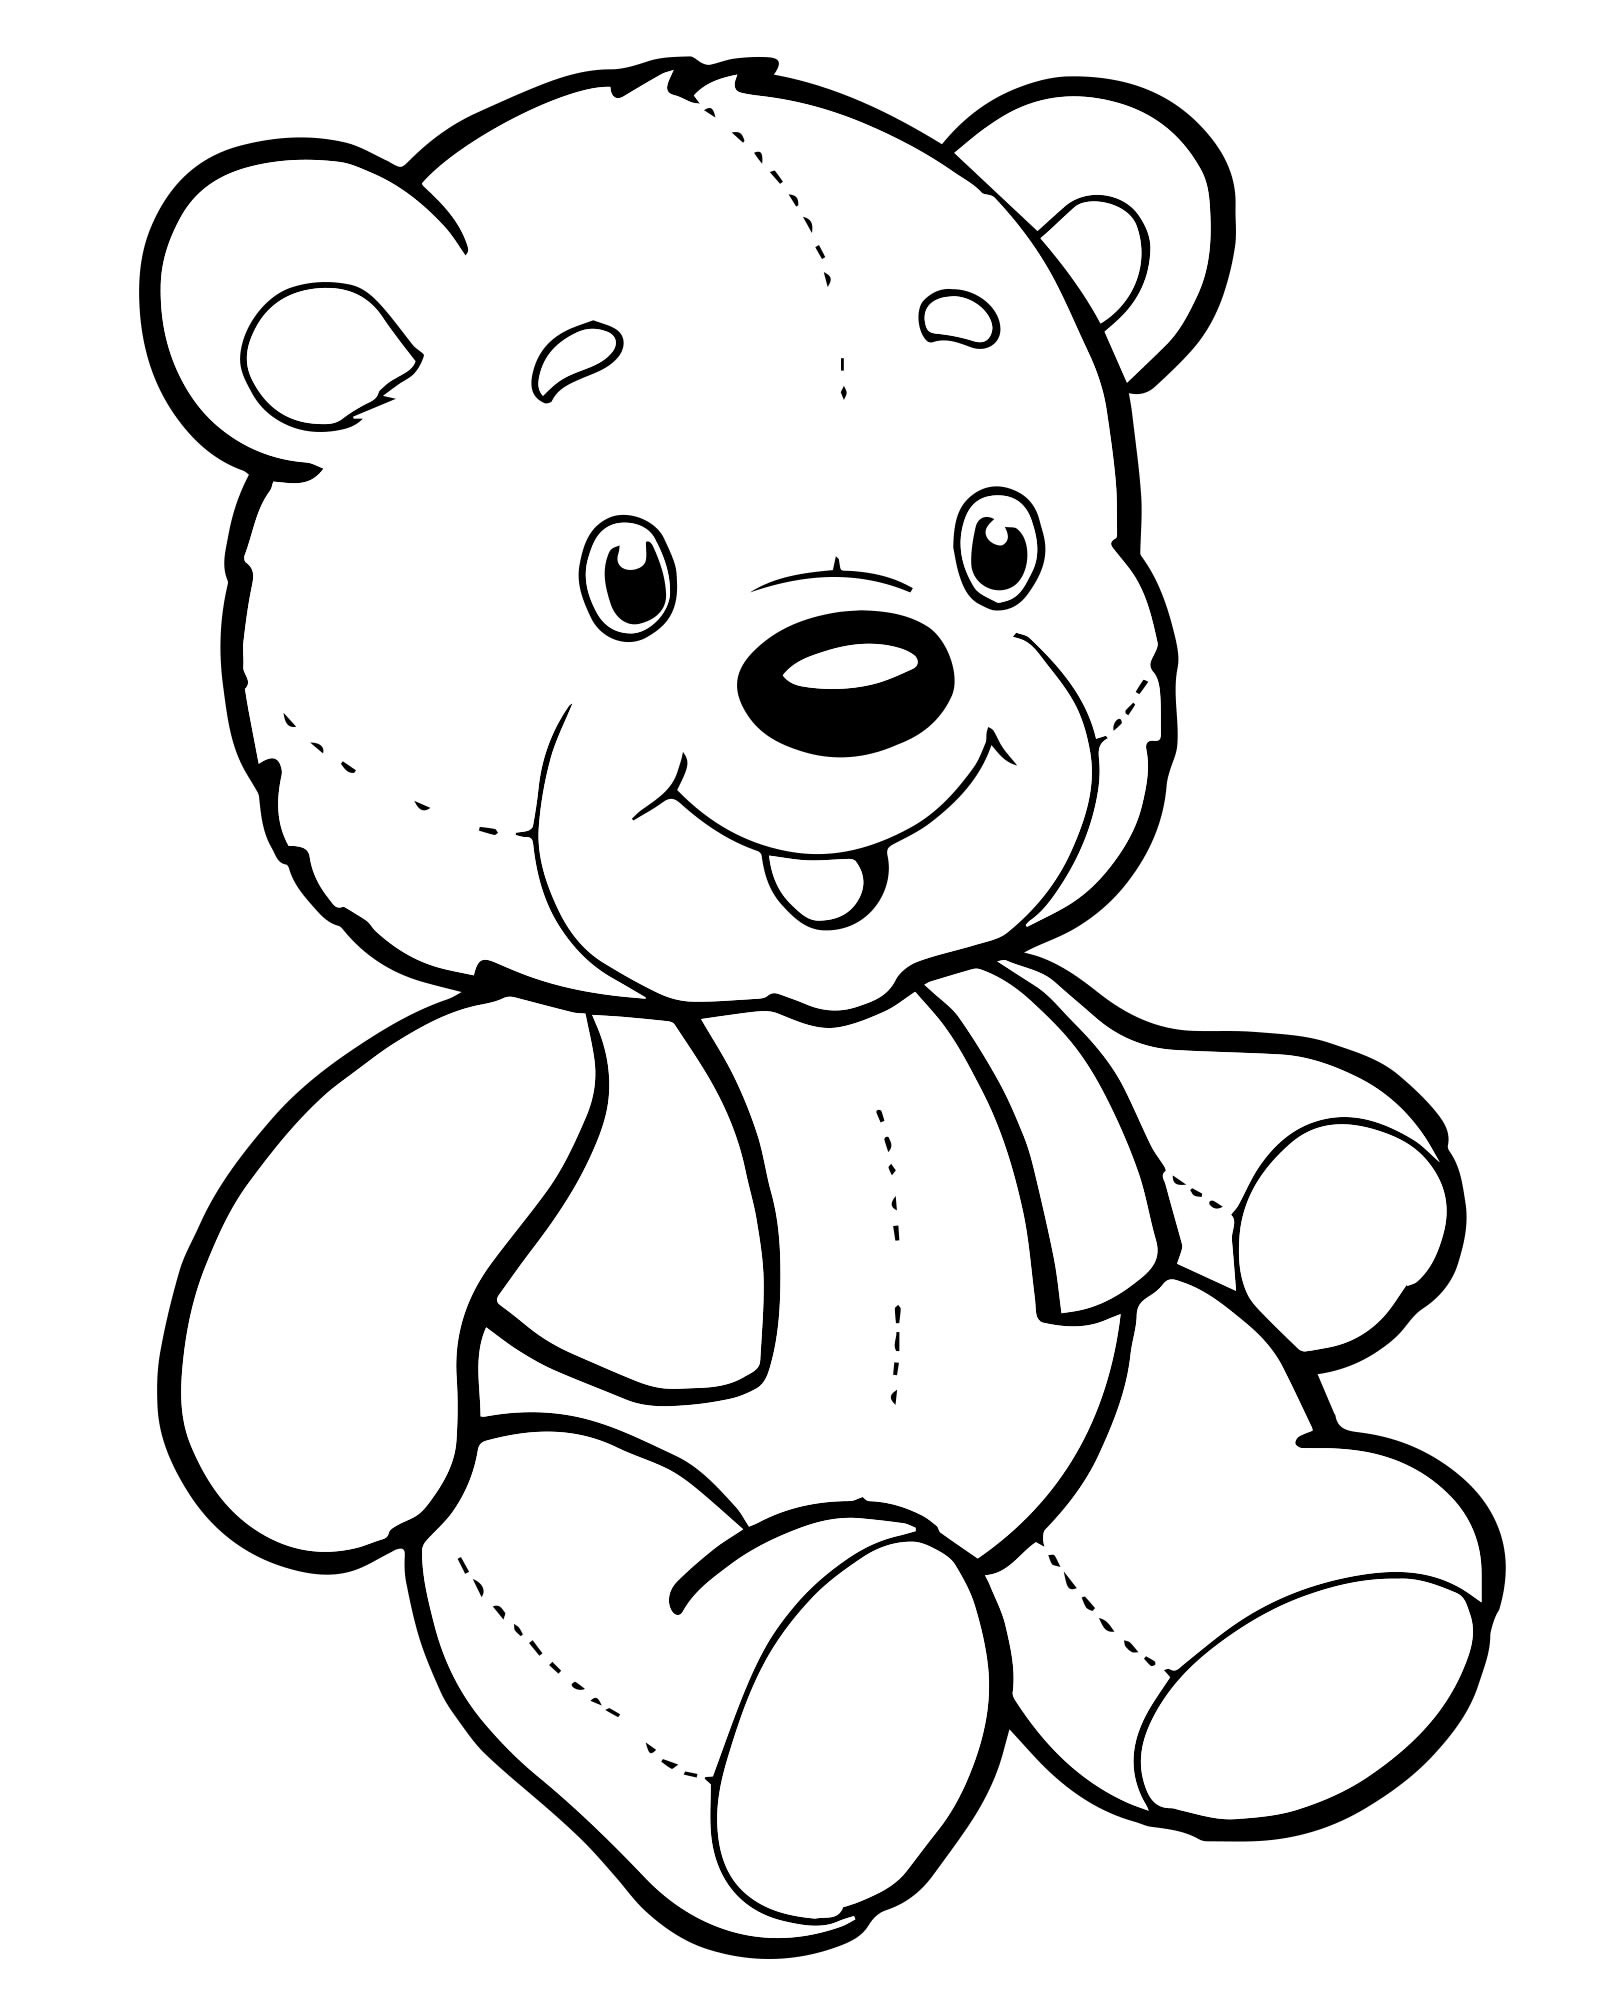 Плюшевый медвежонок раскраска для детей